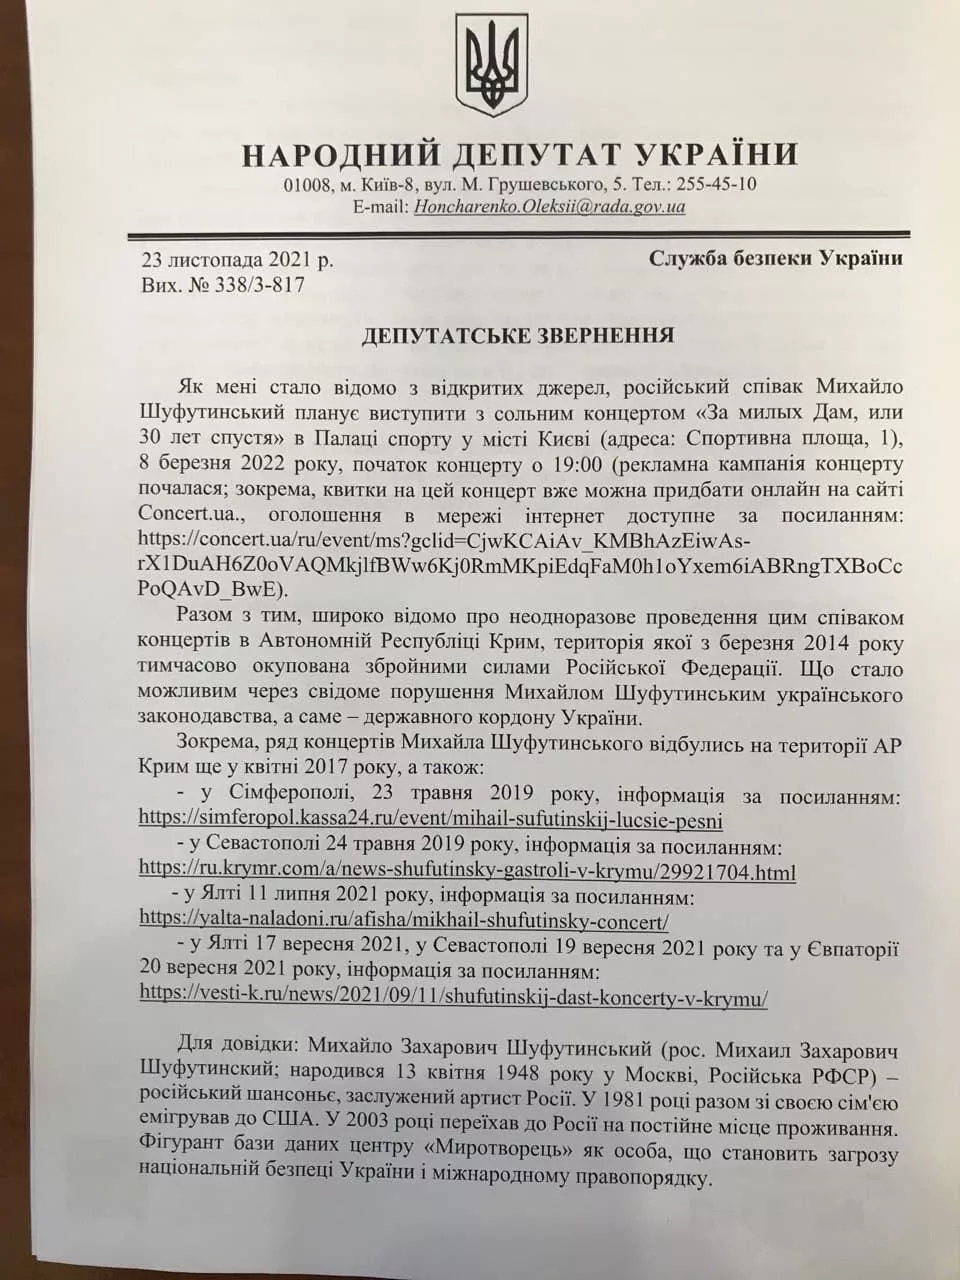 Депутатское обращение о запрете на въезд в Украину Михаилу Шуфутинскому.